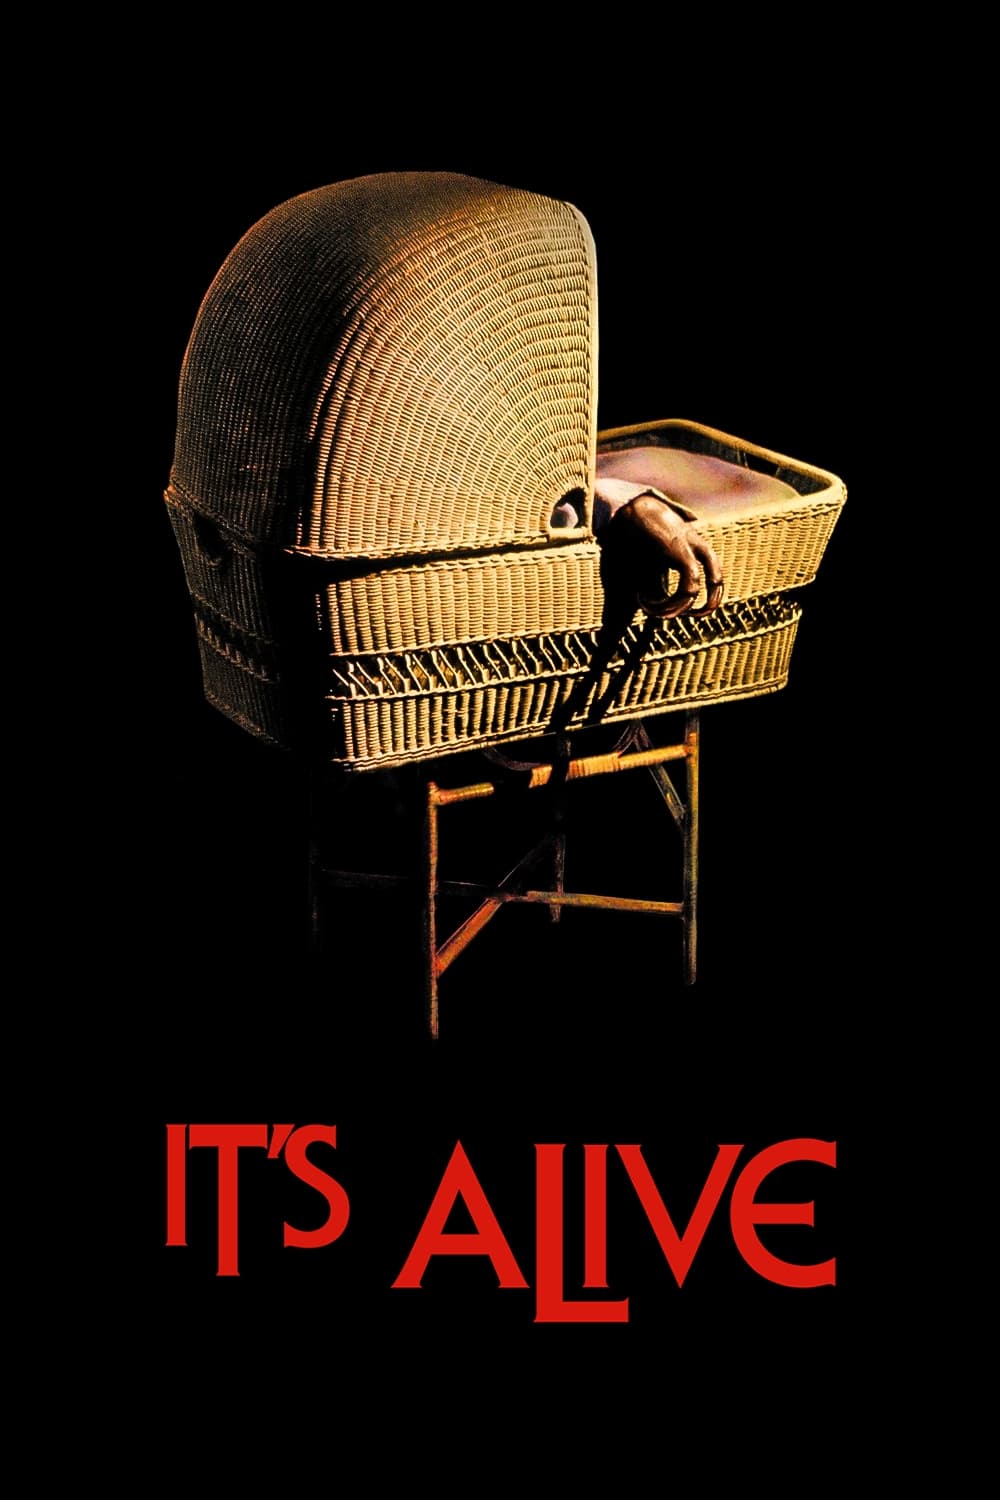 Estoy vivo (1974)